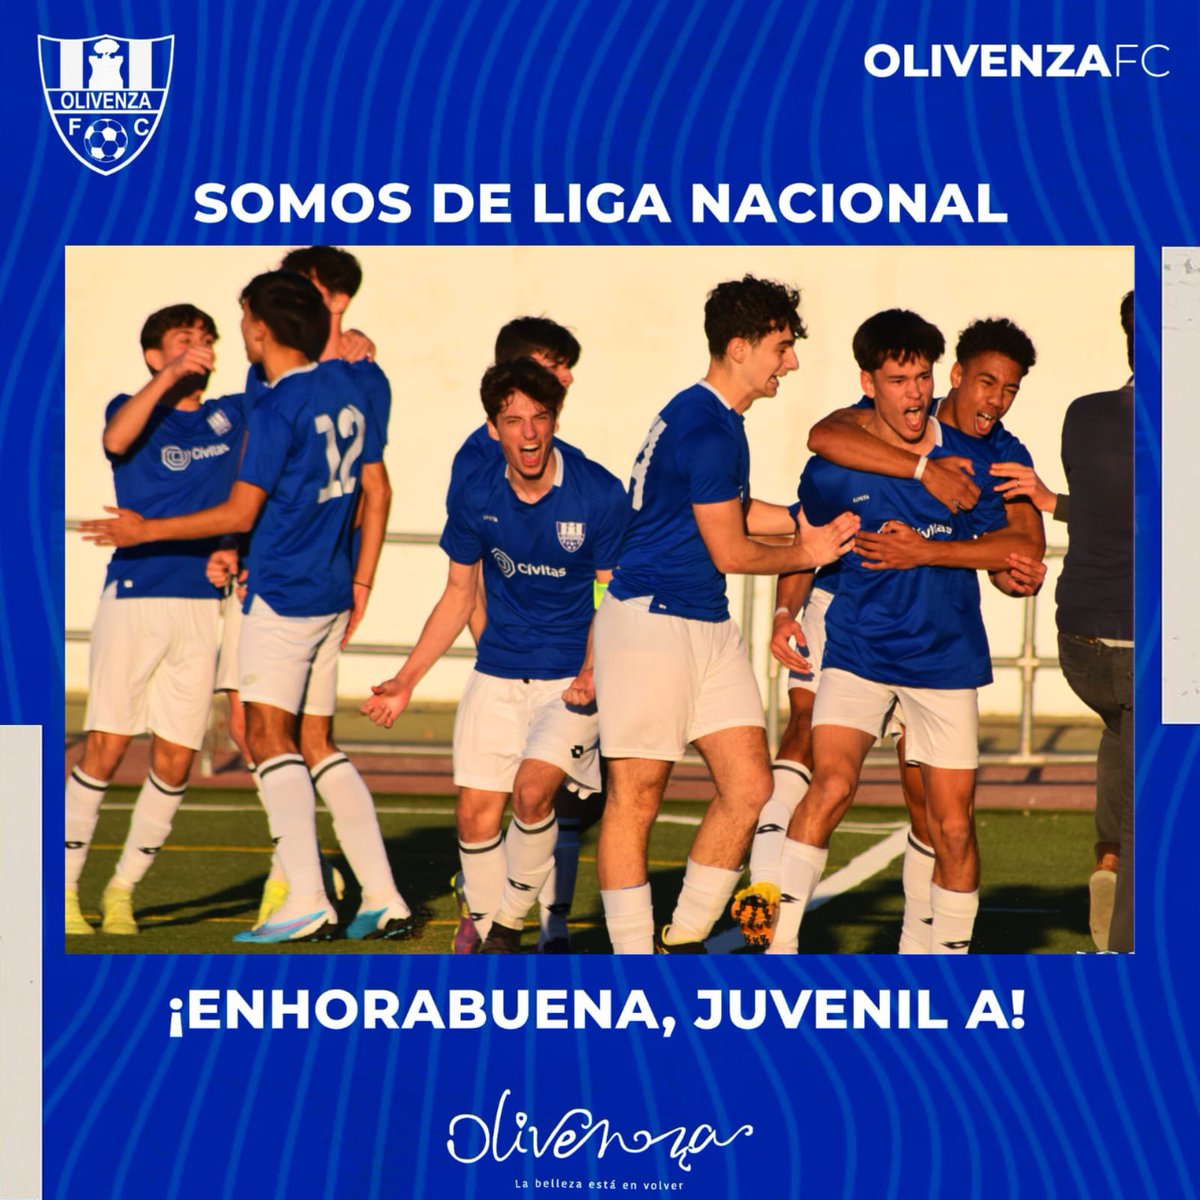 ¡Somos de Liga Nacional! Enhorabuena Buena a Nuestro Juvenil A.

¡Vamos Olivenza!💙🤍

#Juntosporelascenso 
#ContigoHastaElFinal